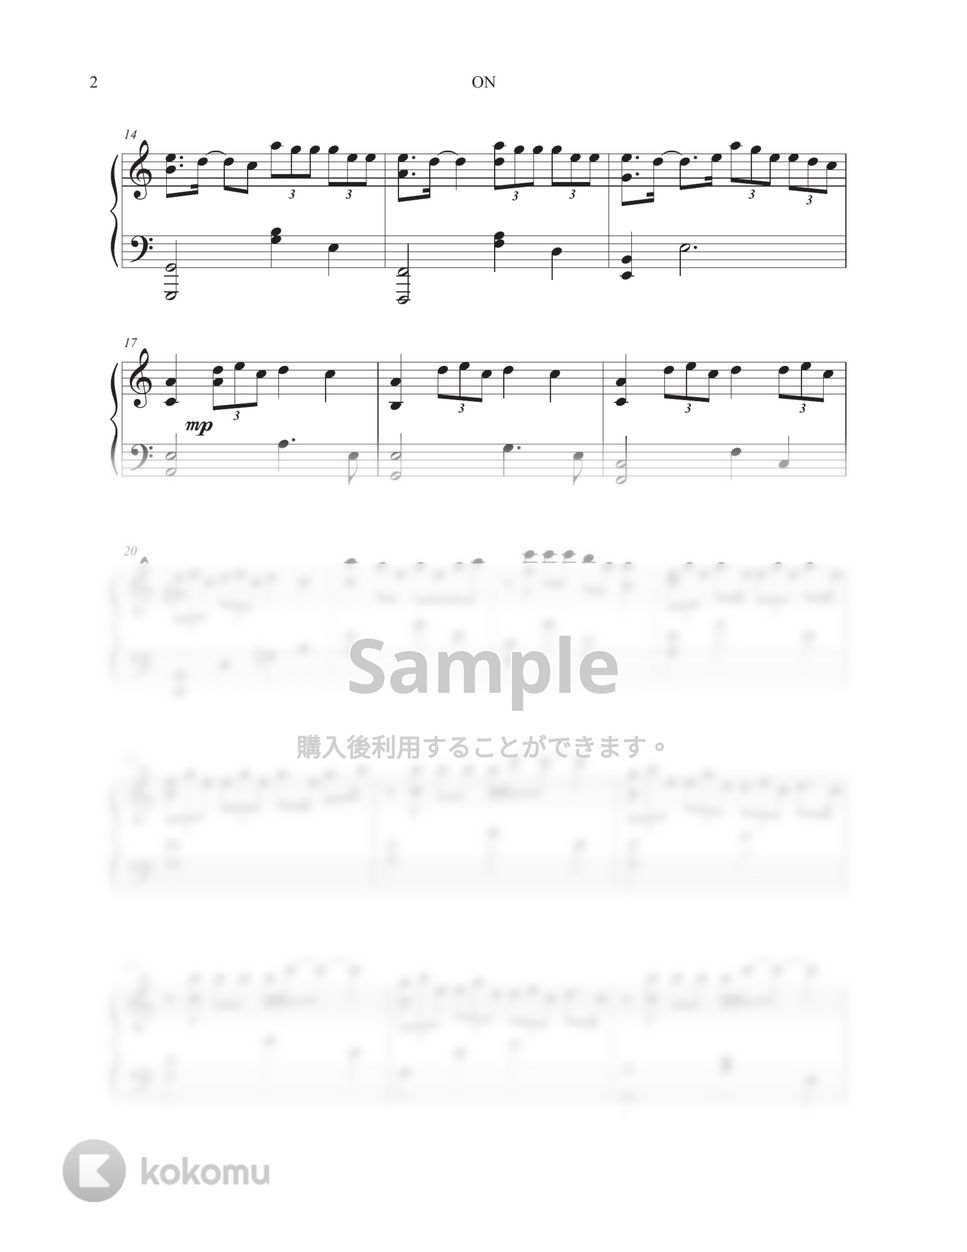 防弾少年団 (BTS) - ON by Tully Piano